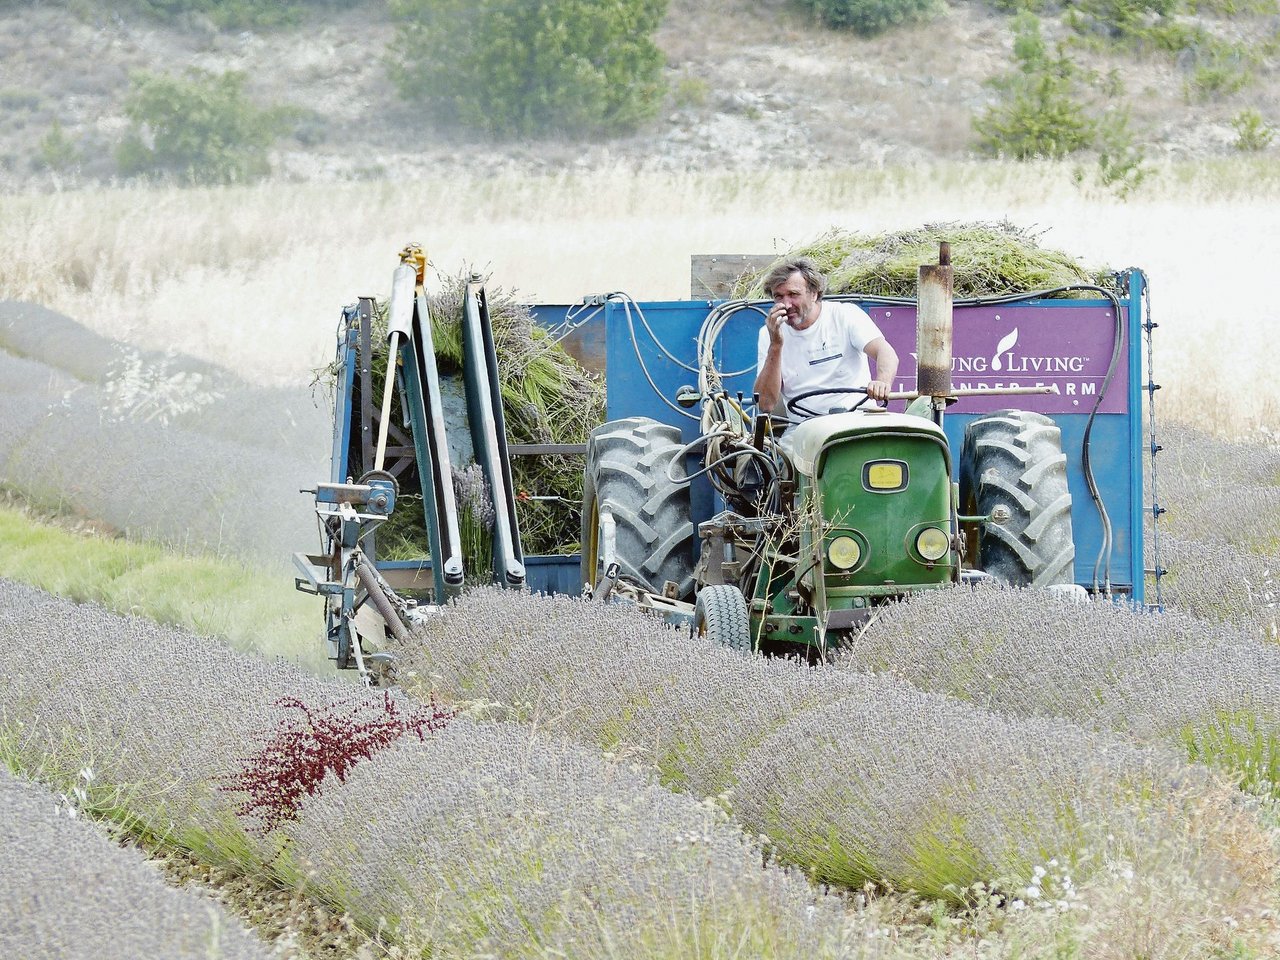 Zum Ernten des Lavendels setzen die provenzalischen Bauern ein spezielles Mähwerk ein, das neben dem Traktor herläuft. (Bild Petra Jacob)